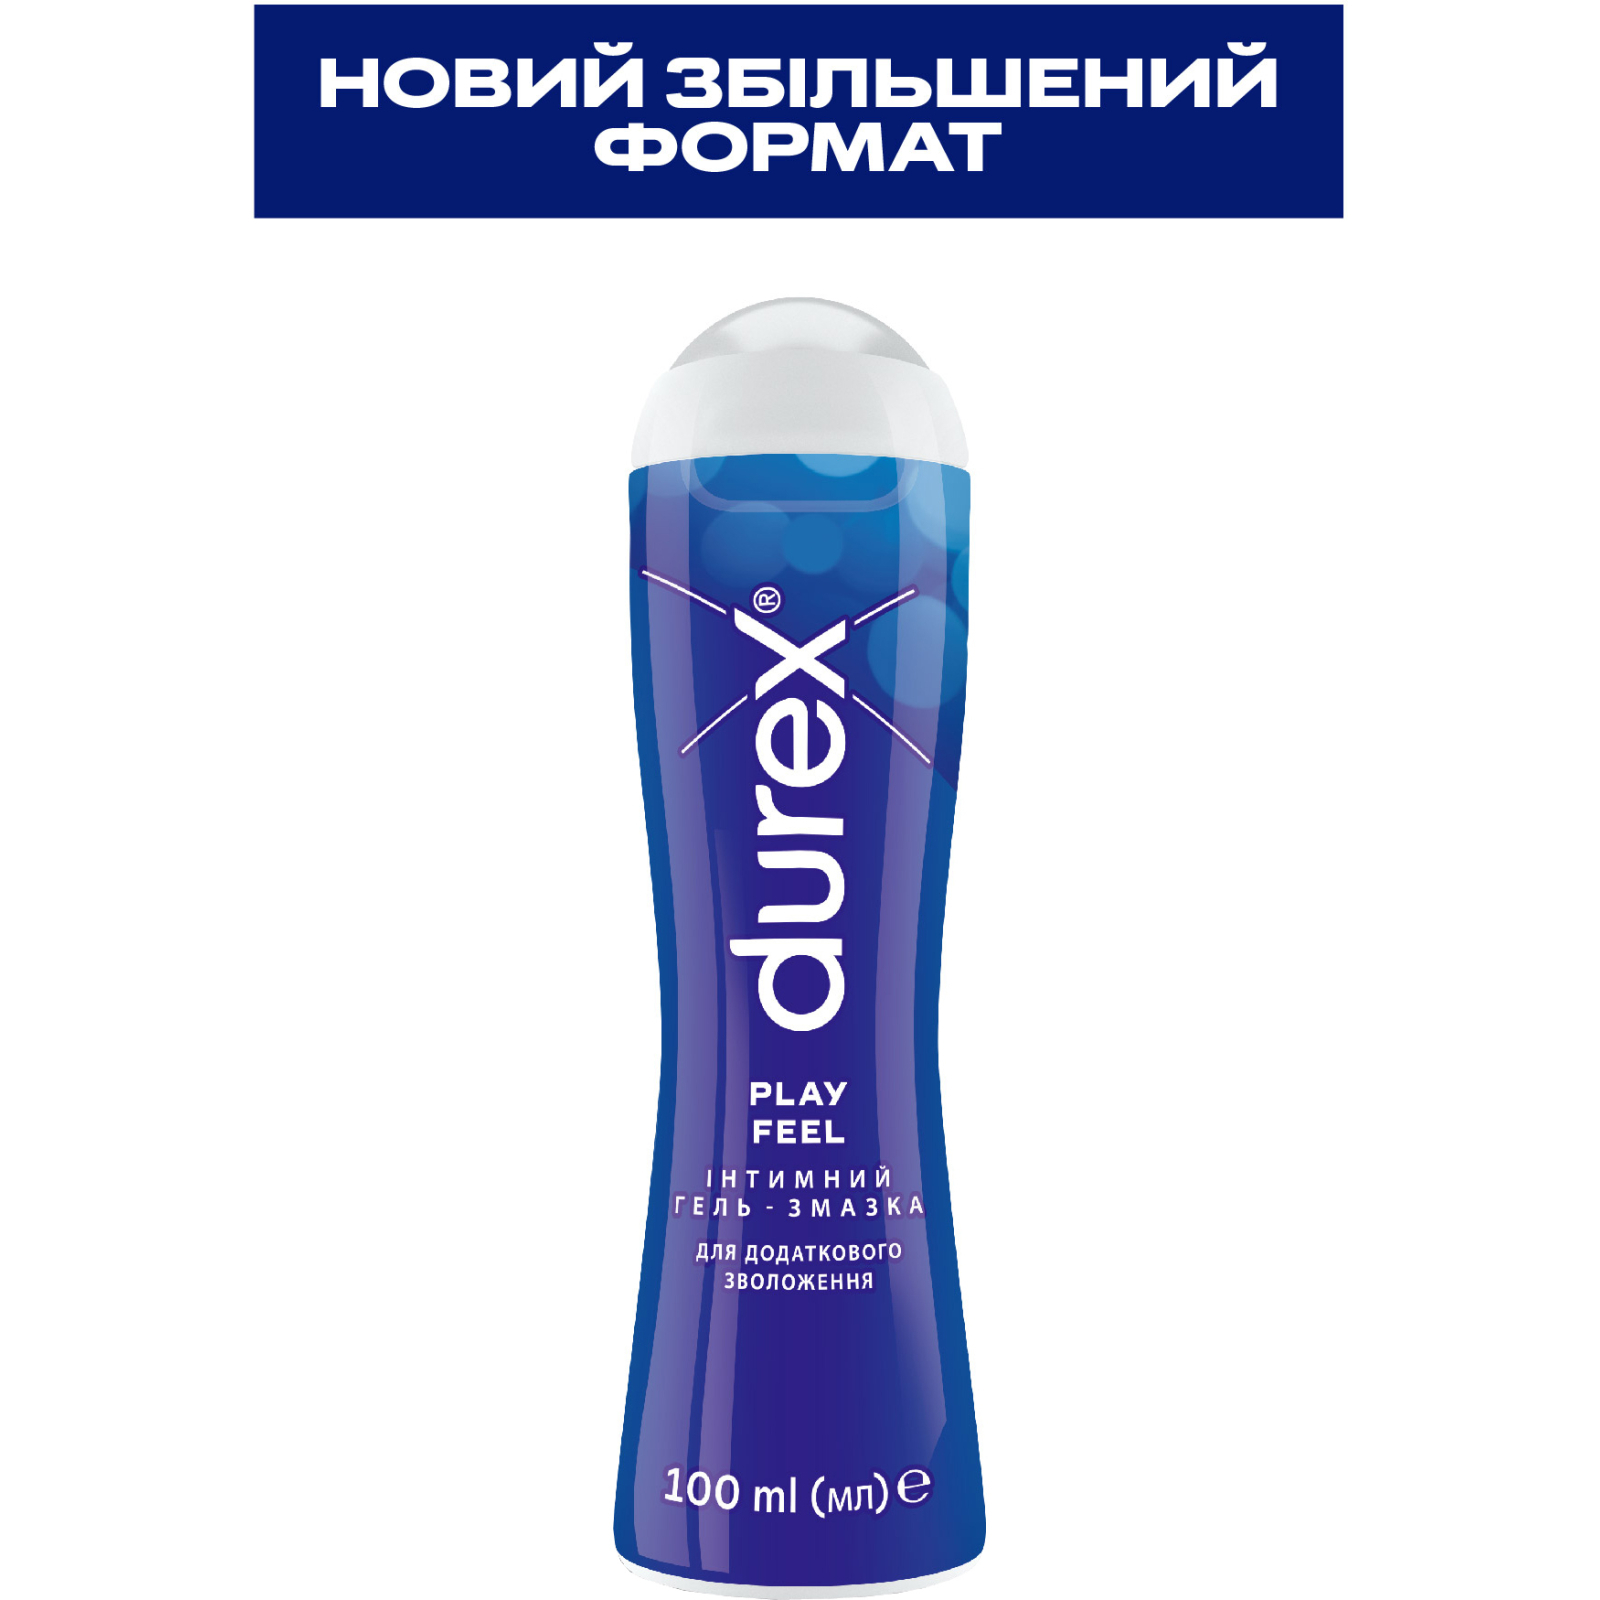 Интимный гель-смазка Durex Play Feel для дополнительного увлажнения (лубрикант) 50 мл (4820108005297) изображение 2